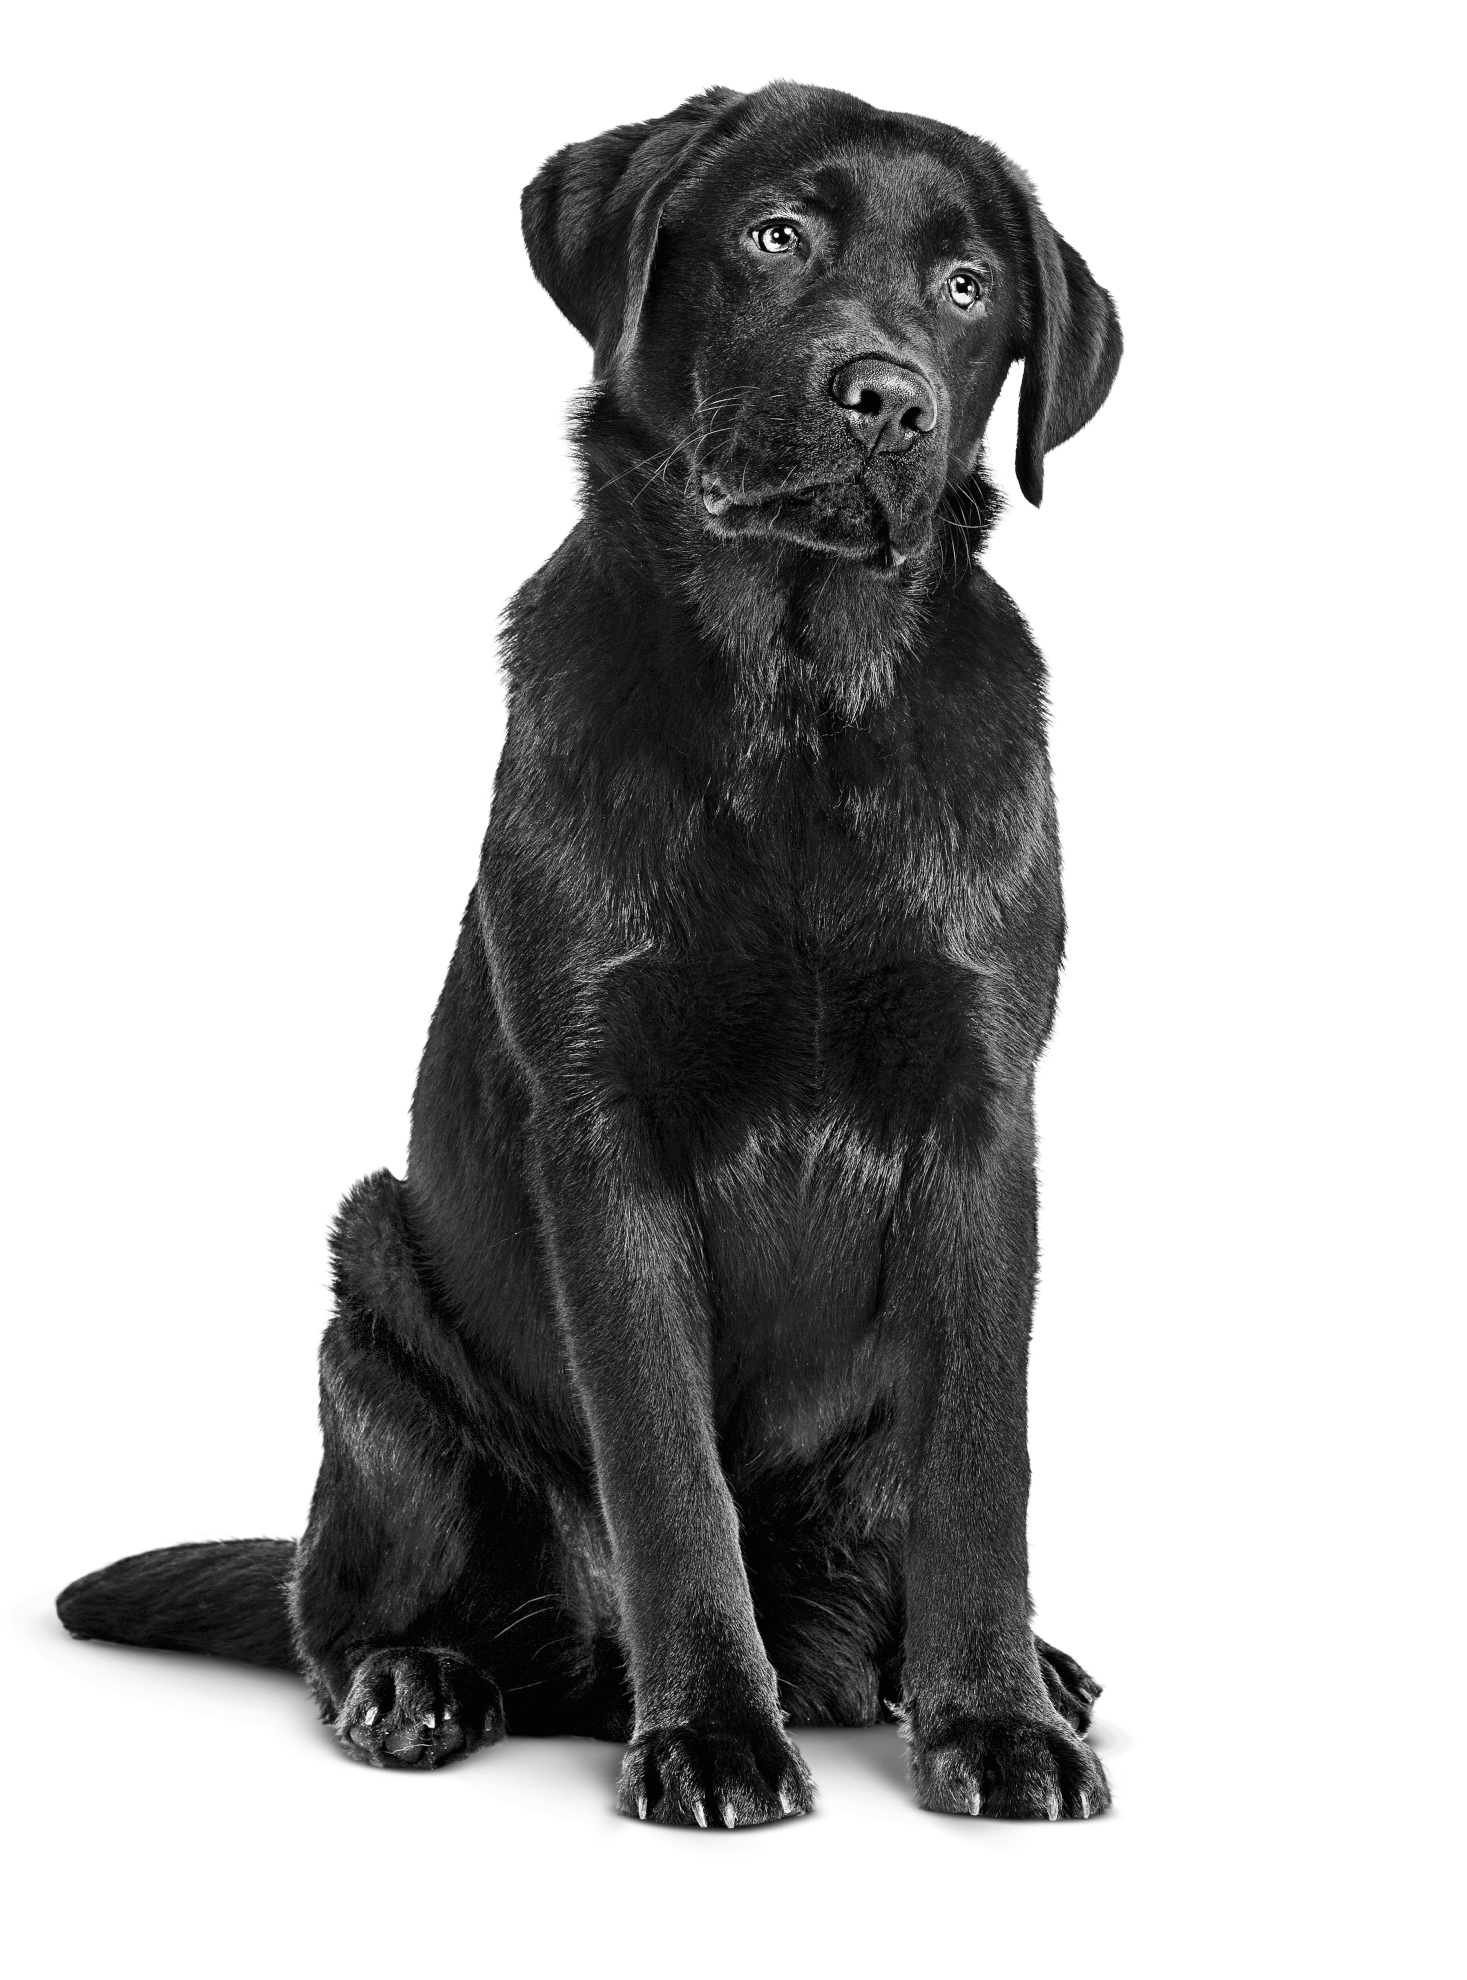 Recovery - Royal Canin - ÓTIMA RAÇÃO ÚMIDA para gatos e cachorros